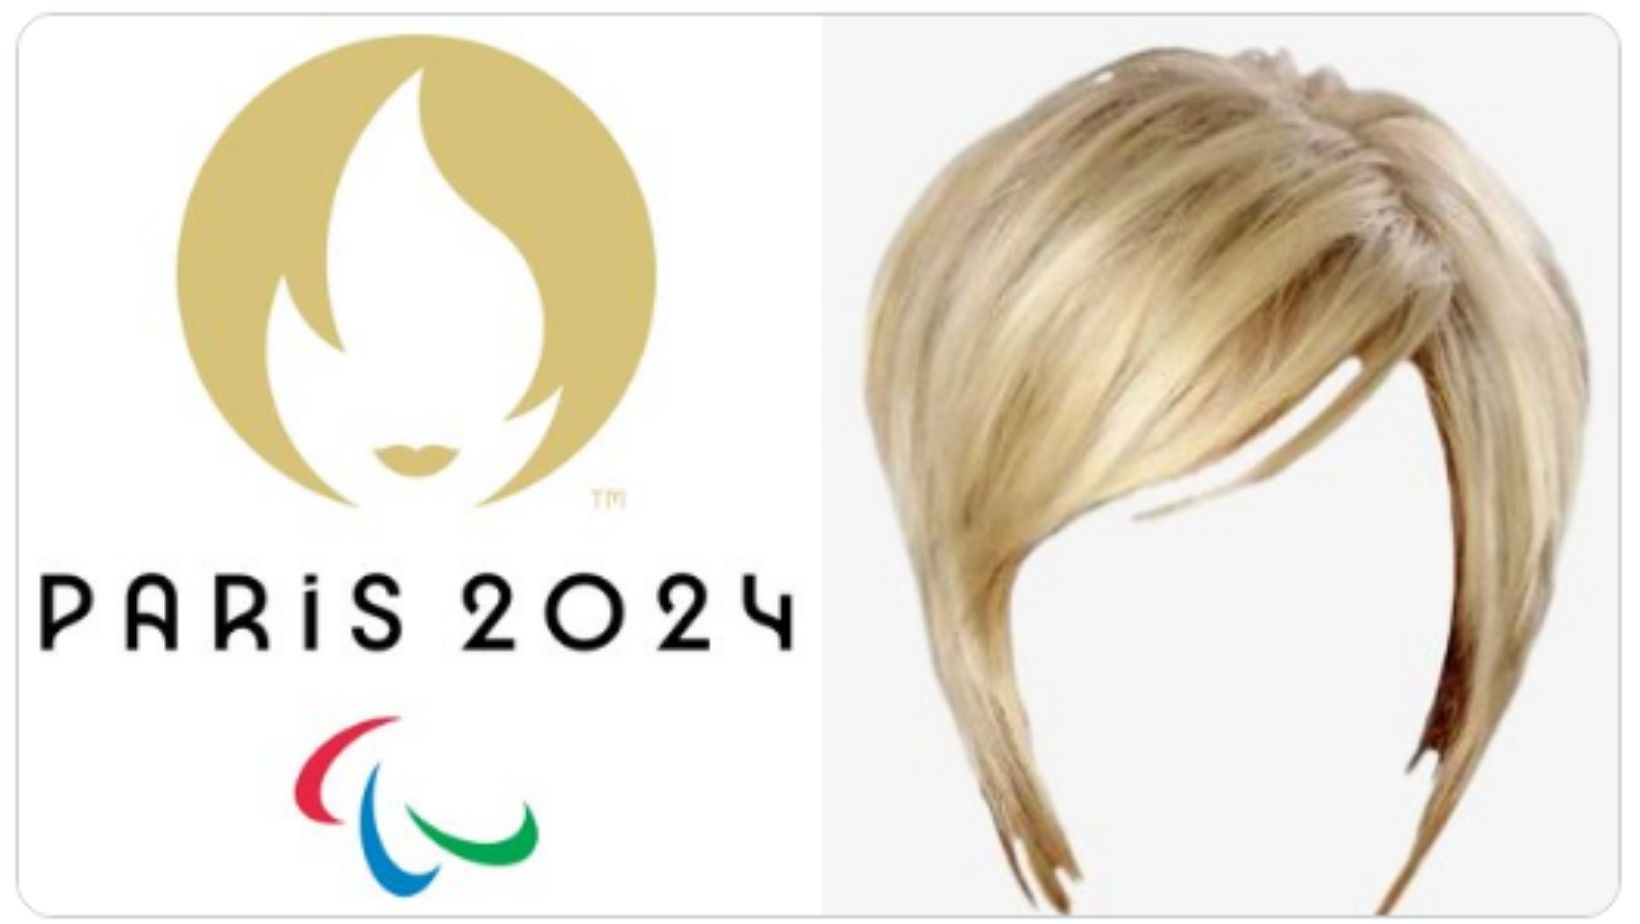 Стрижка волос в марте 2024 г. Прически стрижки 2024. Стрижка волос женская 2024. Прически 2024 года женские. Причёски стрижки женские 2024.